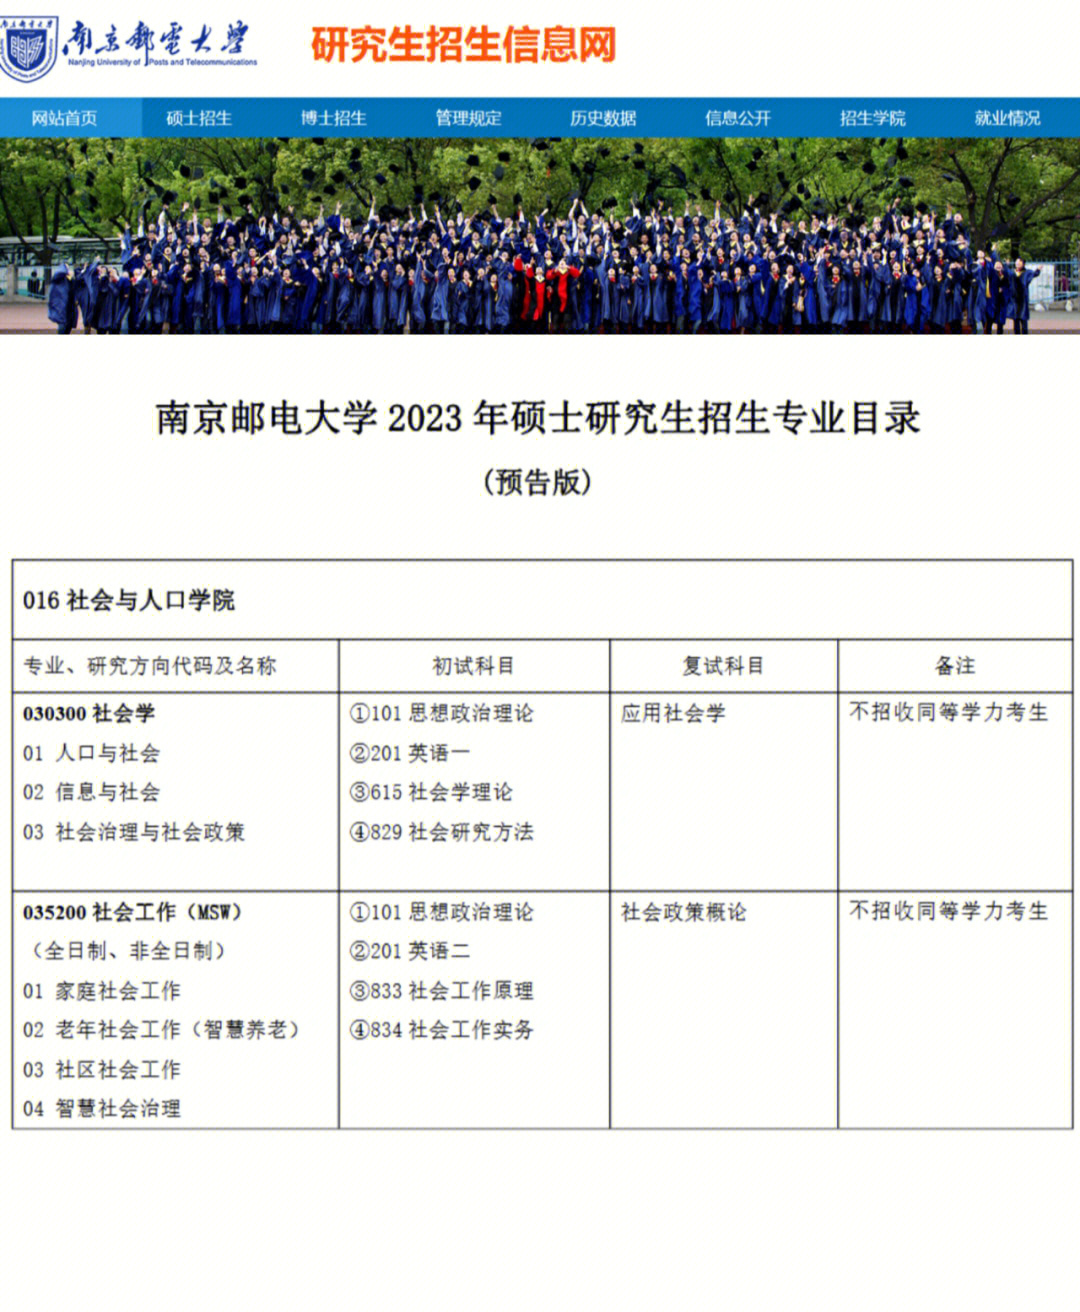 南京的另外一所高校南京邮电大学发布了研究生专业目录预告,如上图